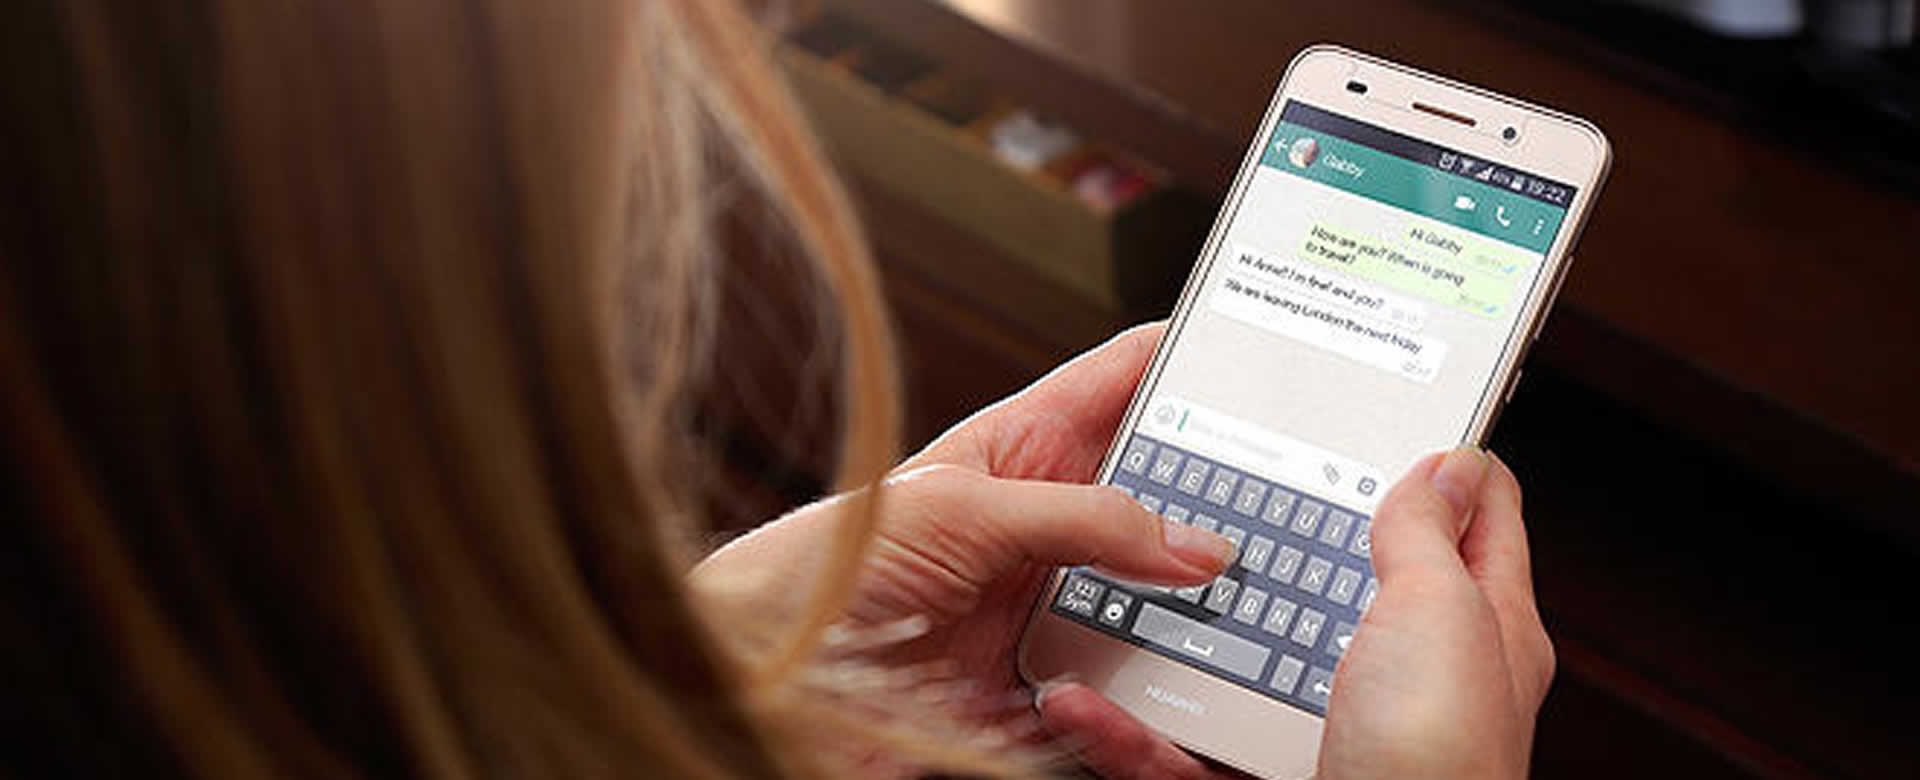 Este 31 de diciembre Whatsapp dejará de funcionar en miles de teléfonos